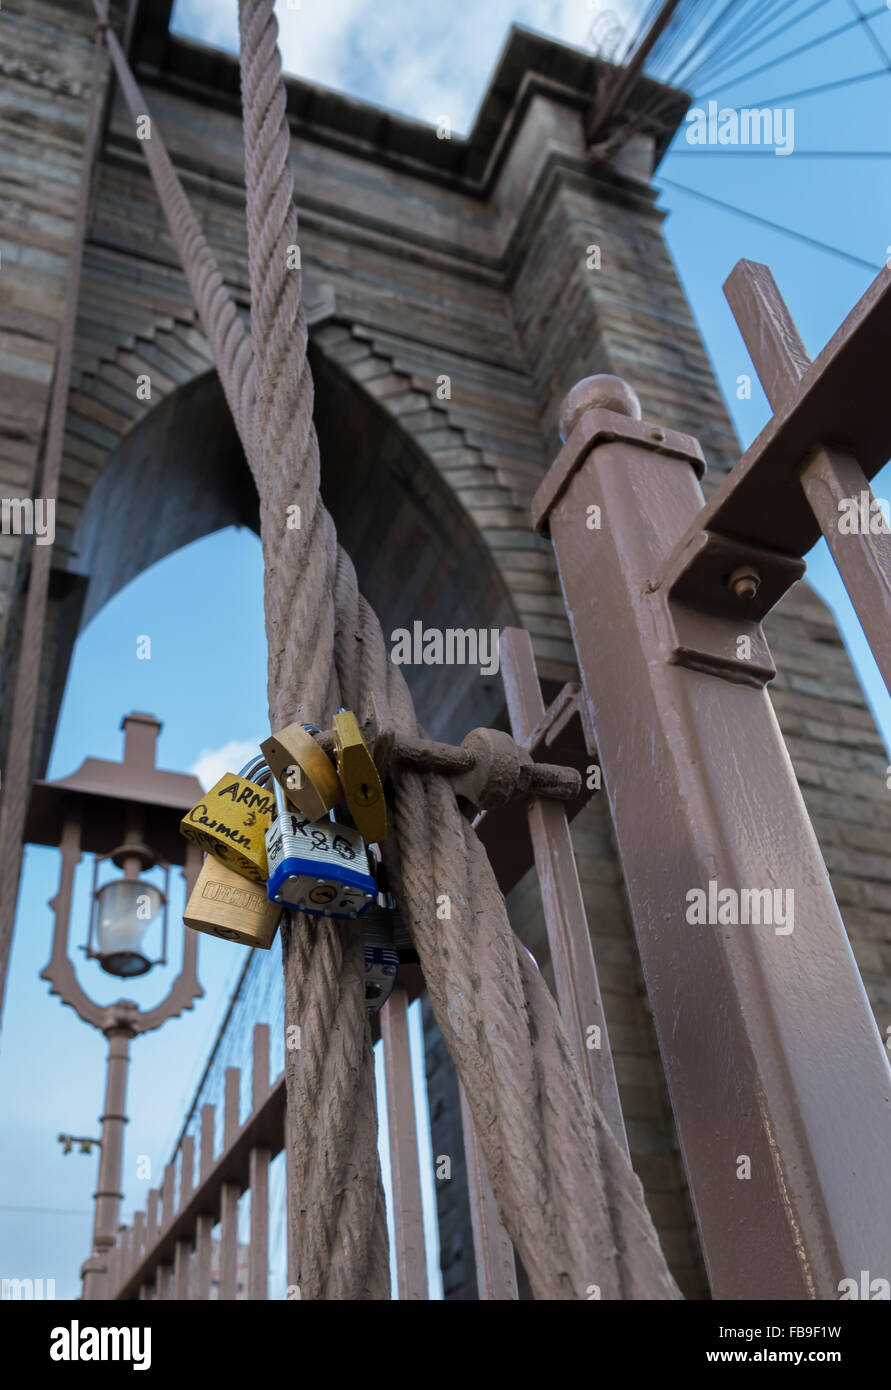 Amore serrature e lucchetti che le persone hanno attaccato al ponte di Brooklyn a New York City con la torre in background Foto Stock